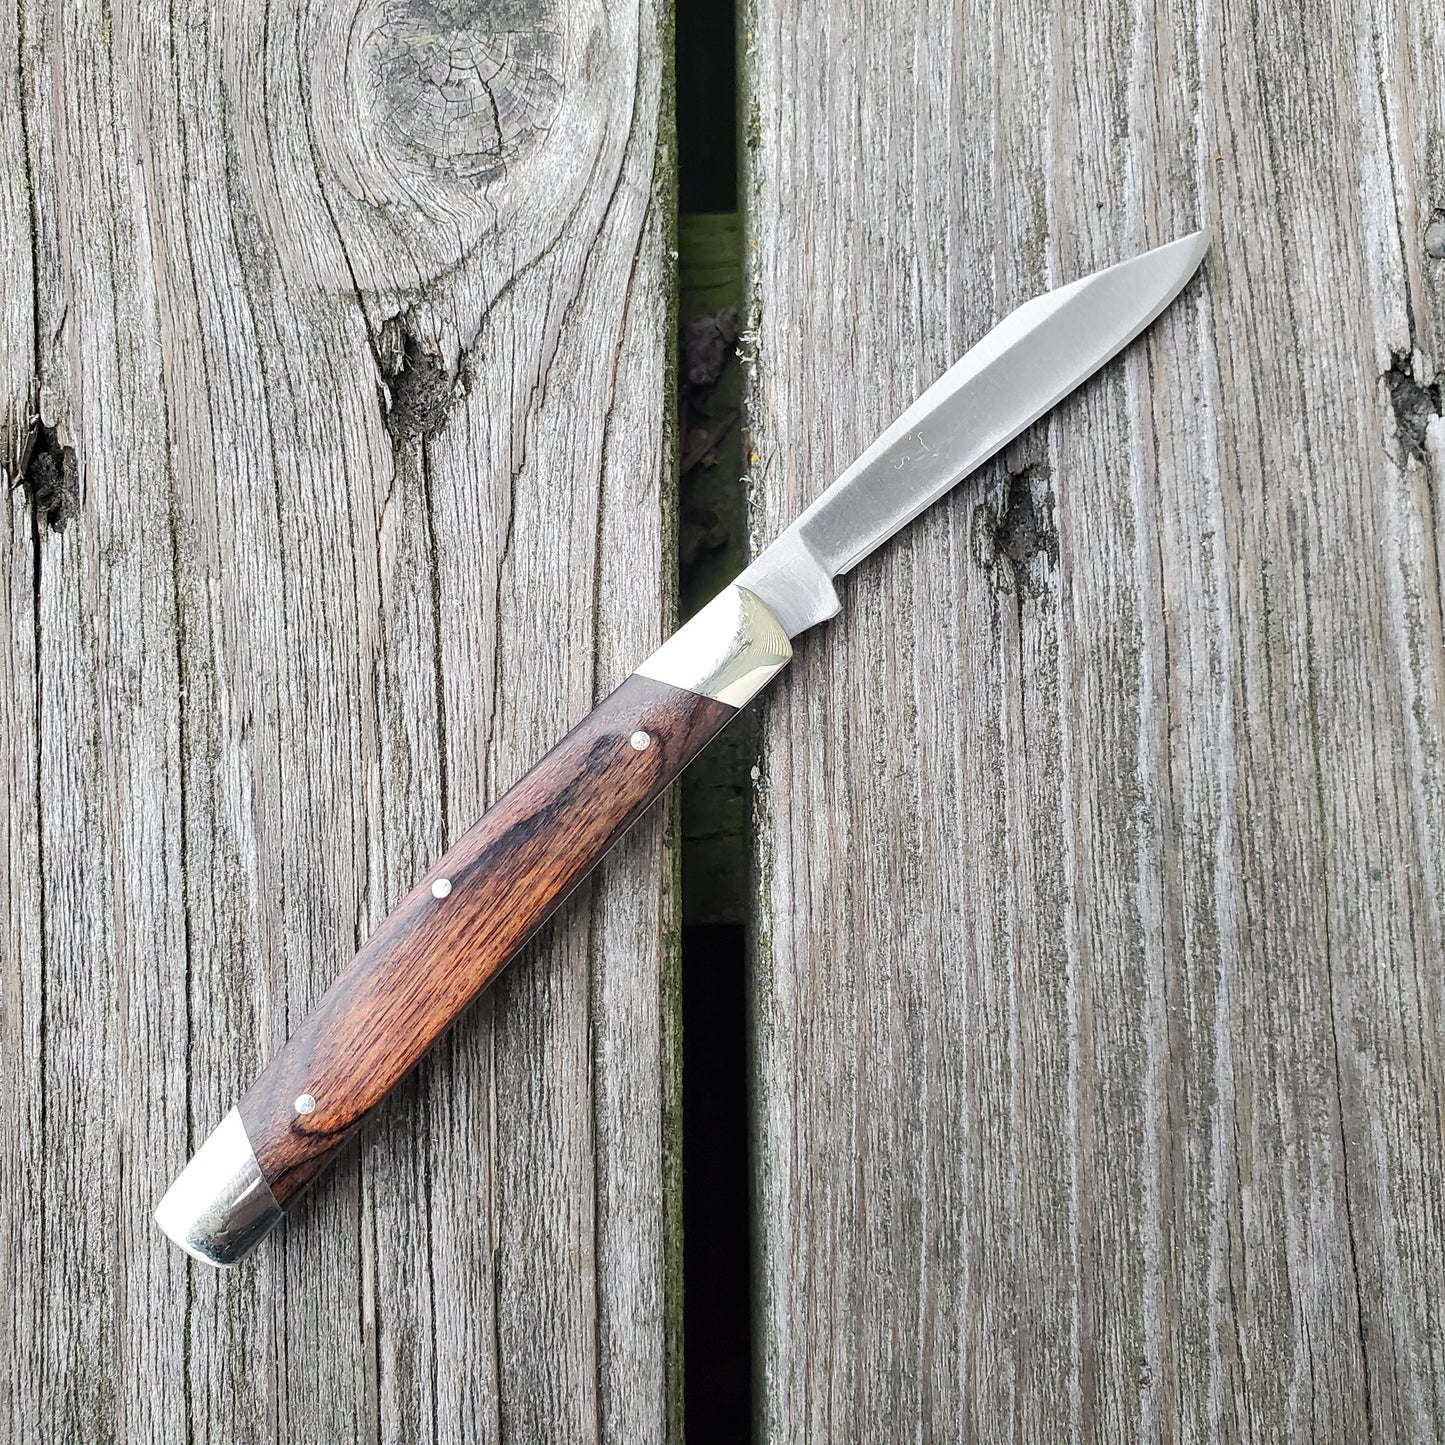 Buck 379 Solo 3" Folding Knife